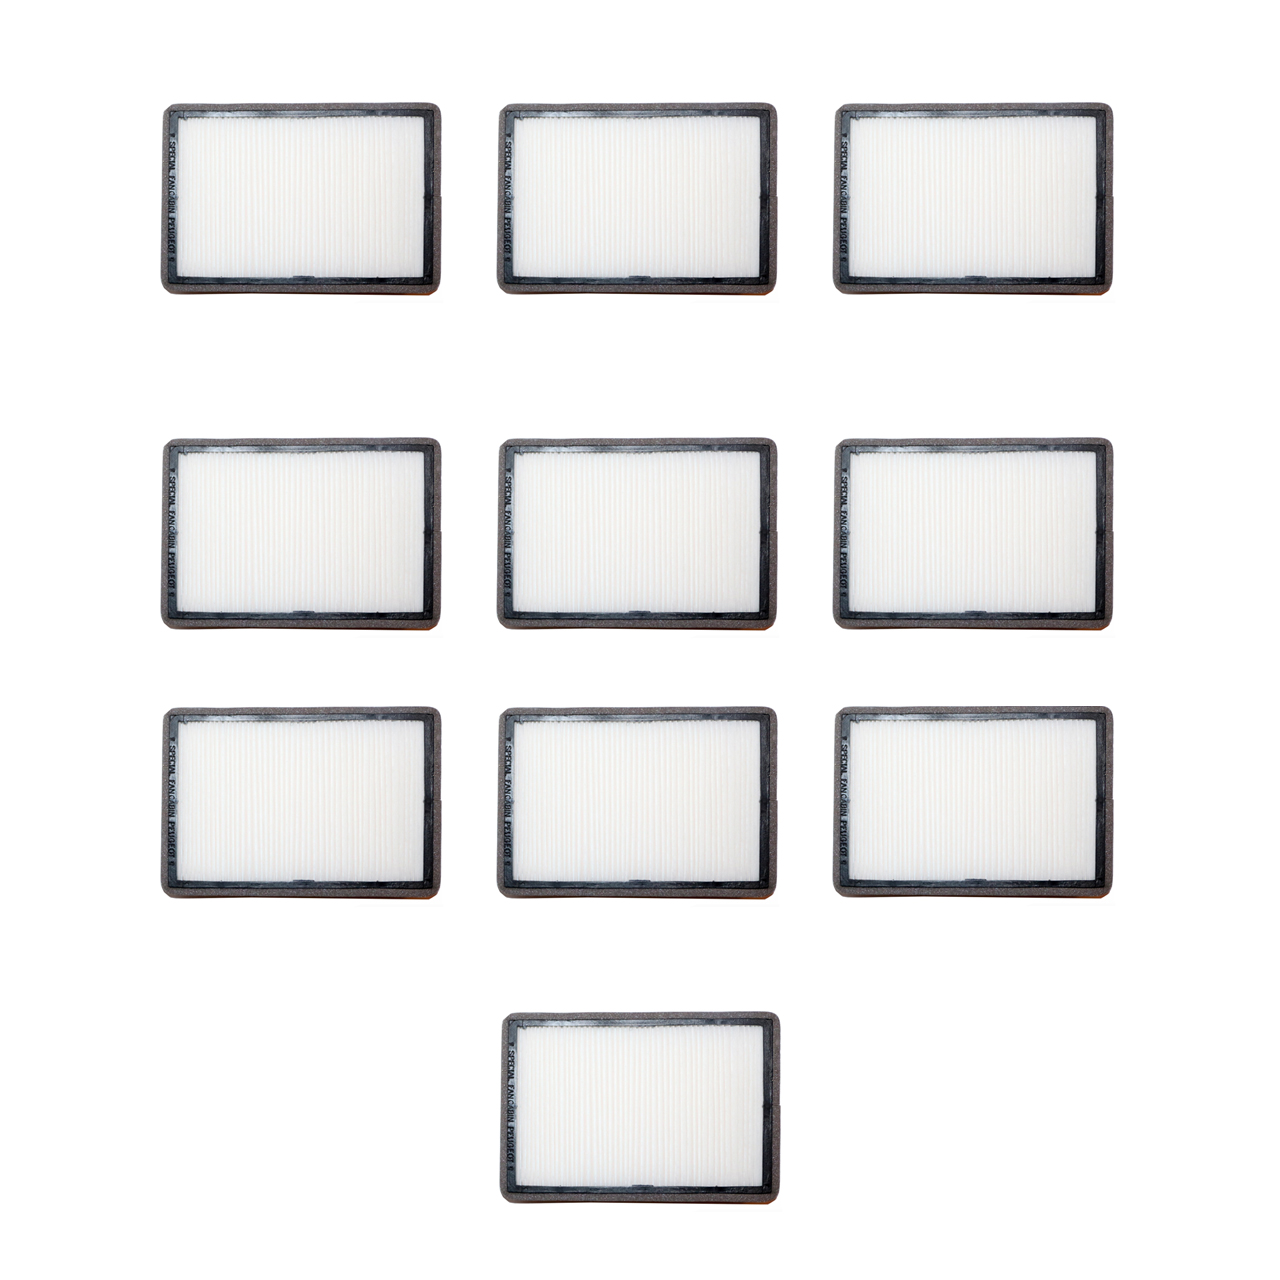 فیلتر کابین خودرو مدل LF405 مناسب برای پژو و سمند بسته 10 عددی